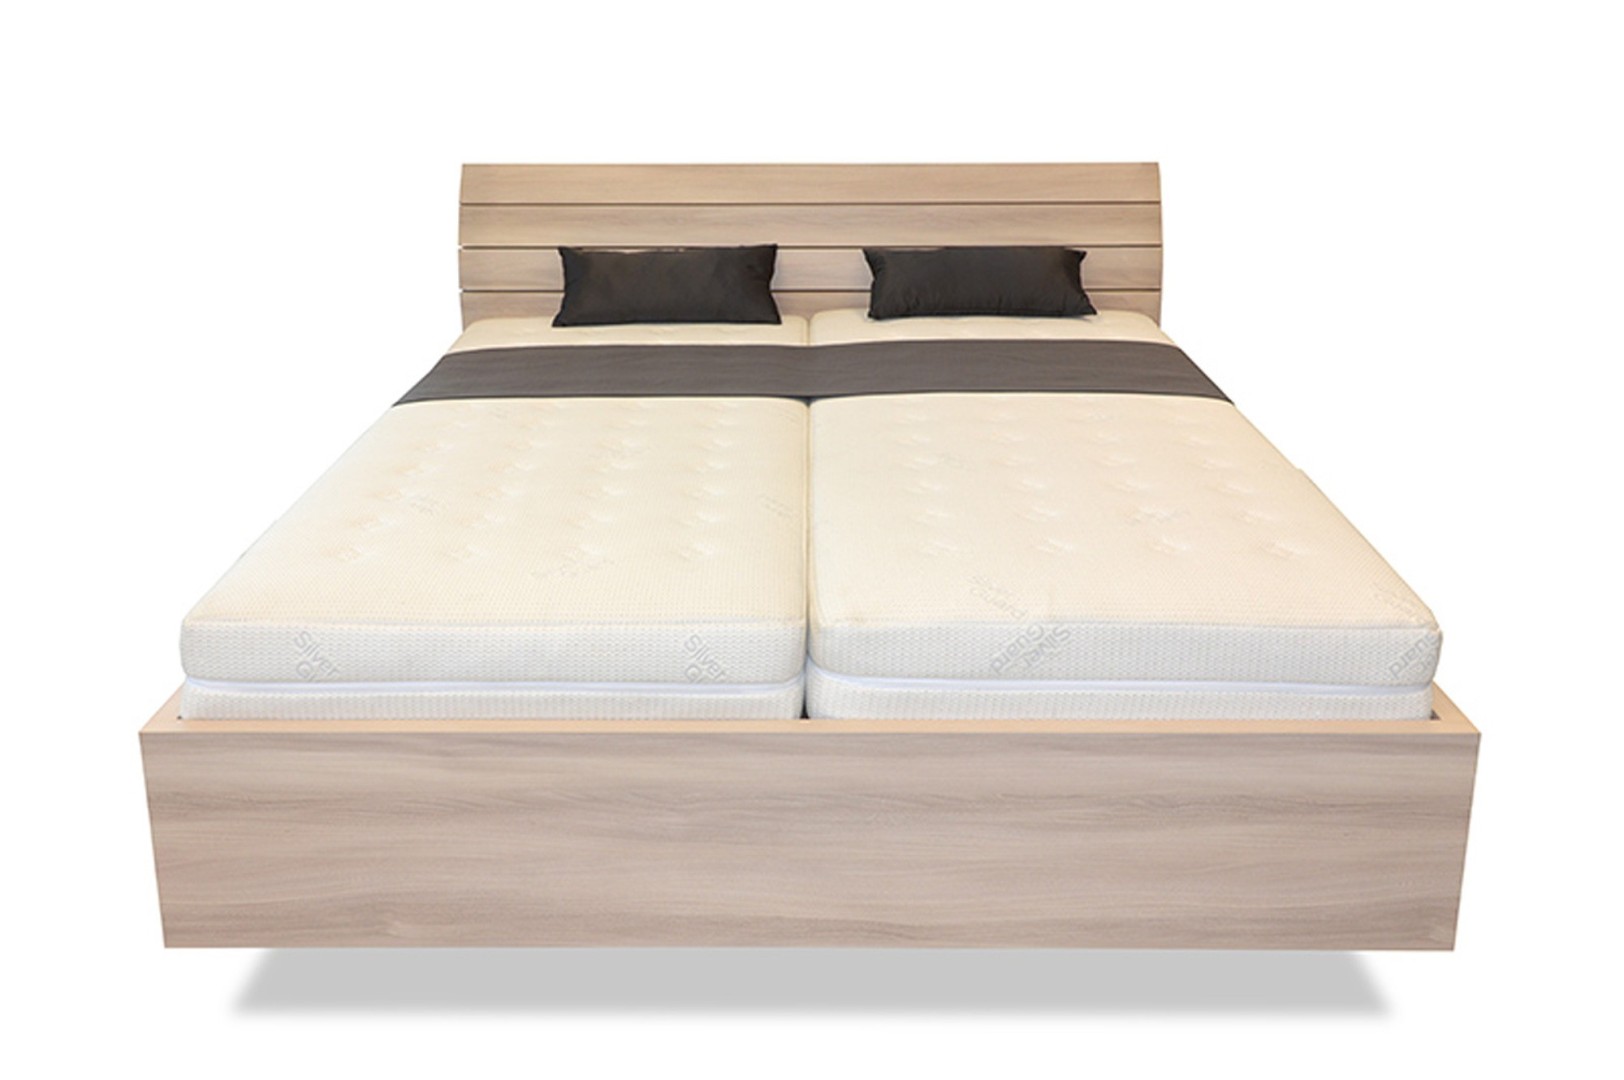 Ahorn SALINA Basic - vznášející se dvoulůžková postel 160 x 220 cm, lamino